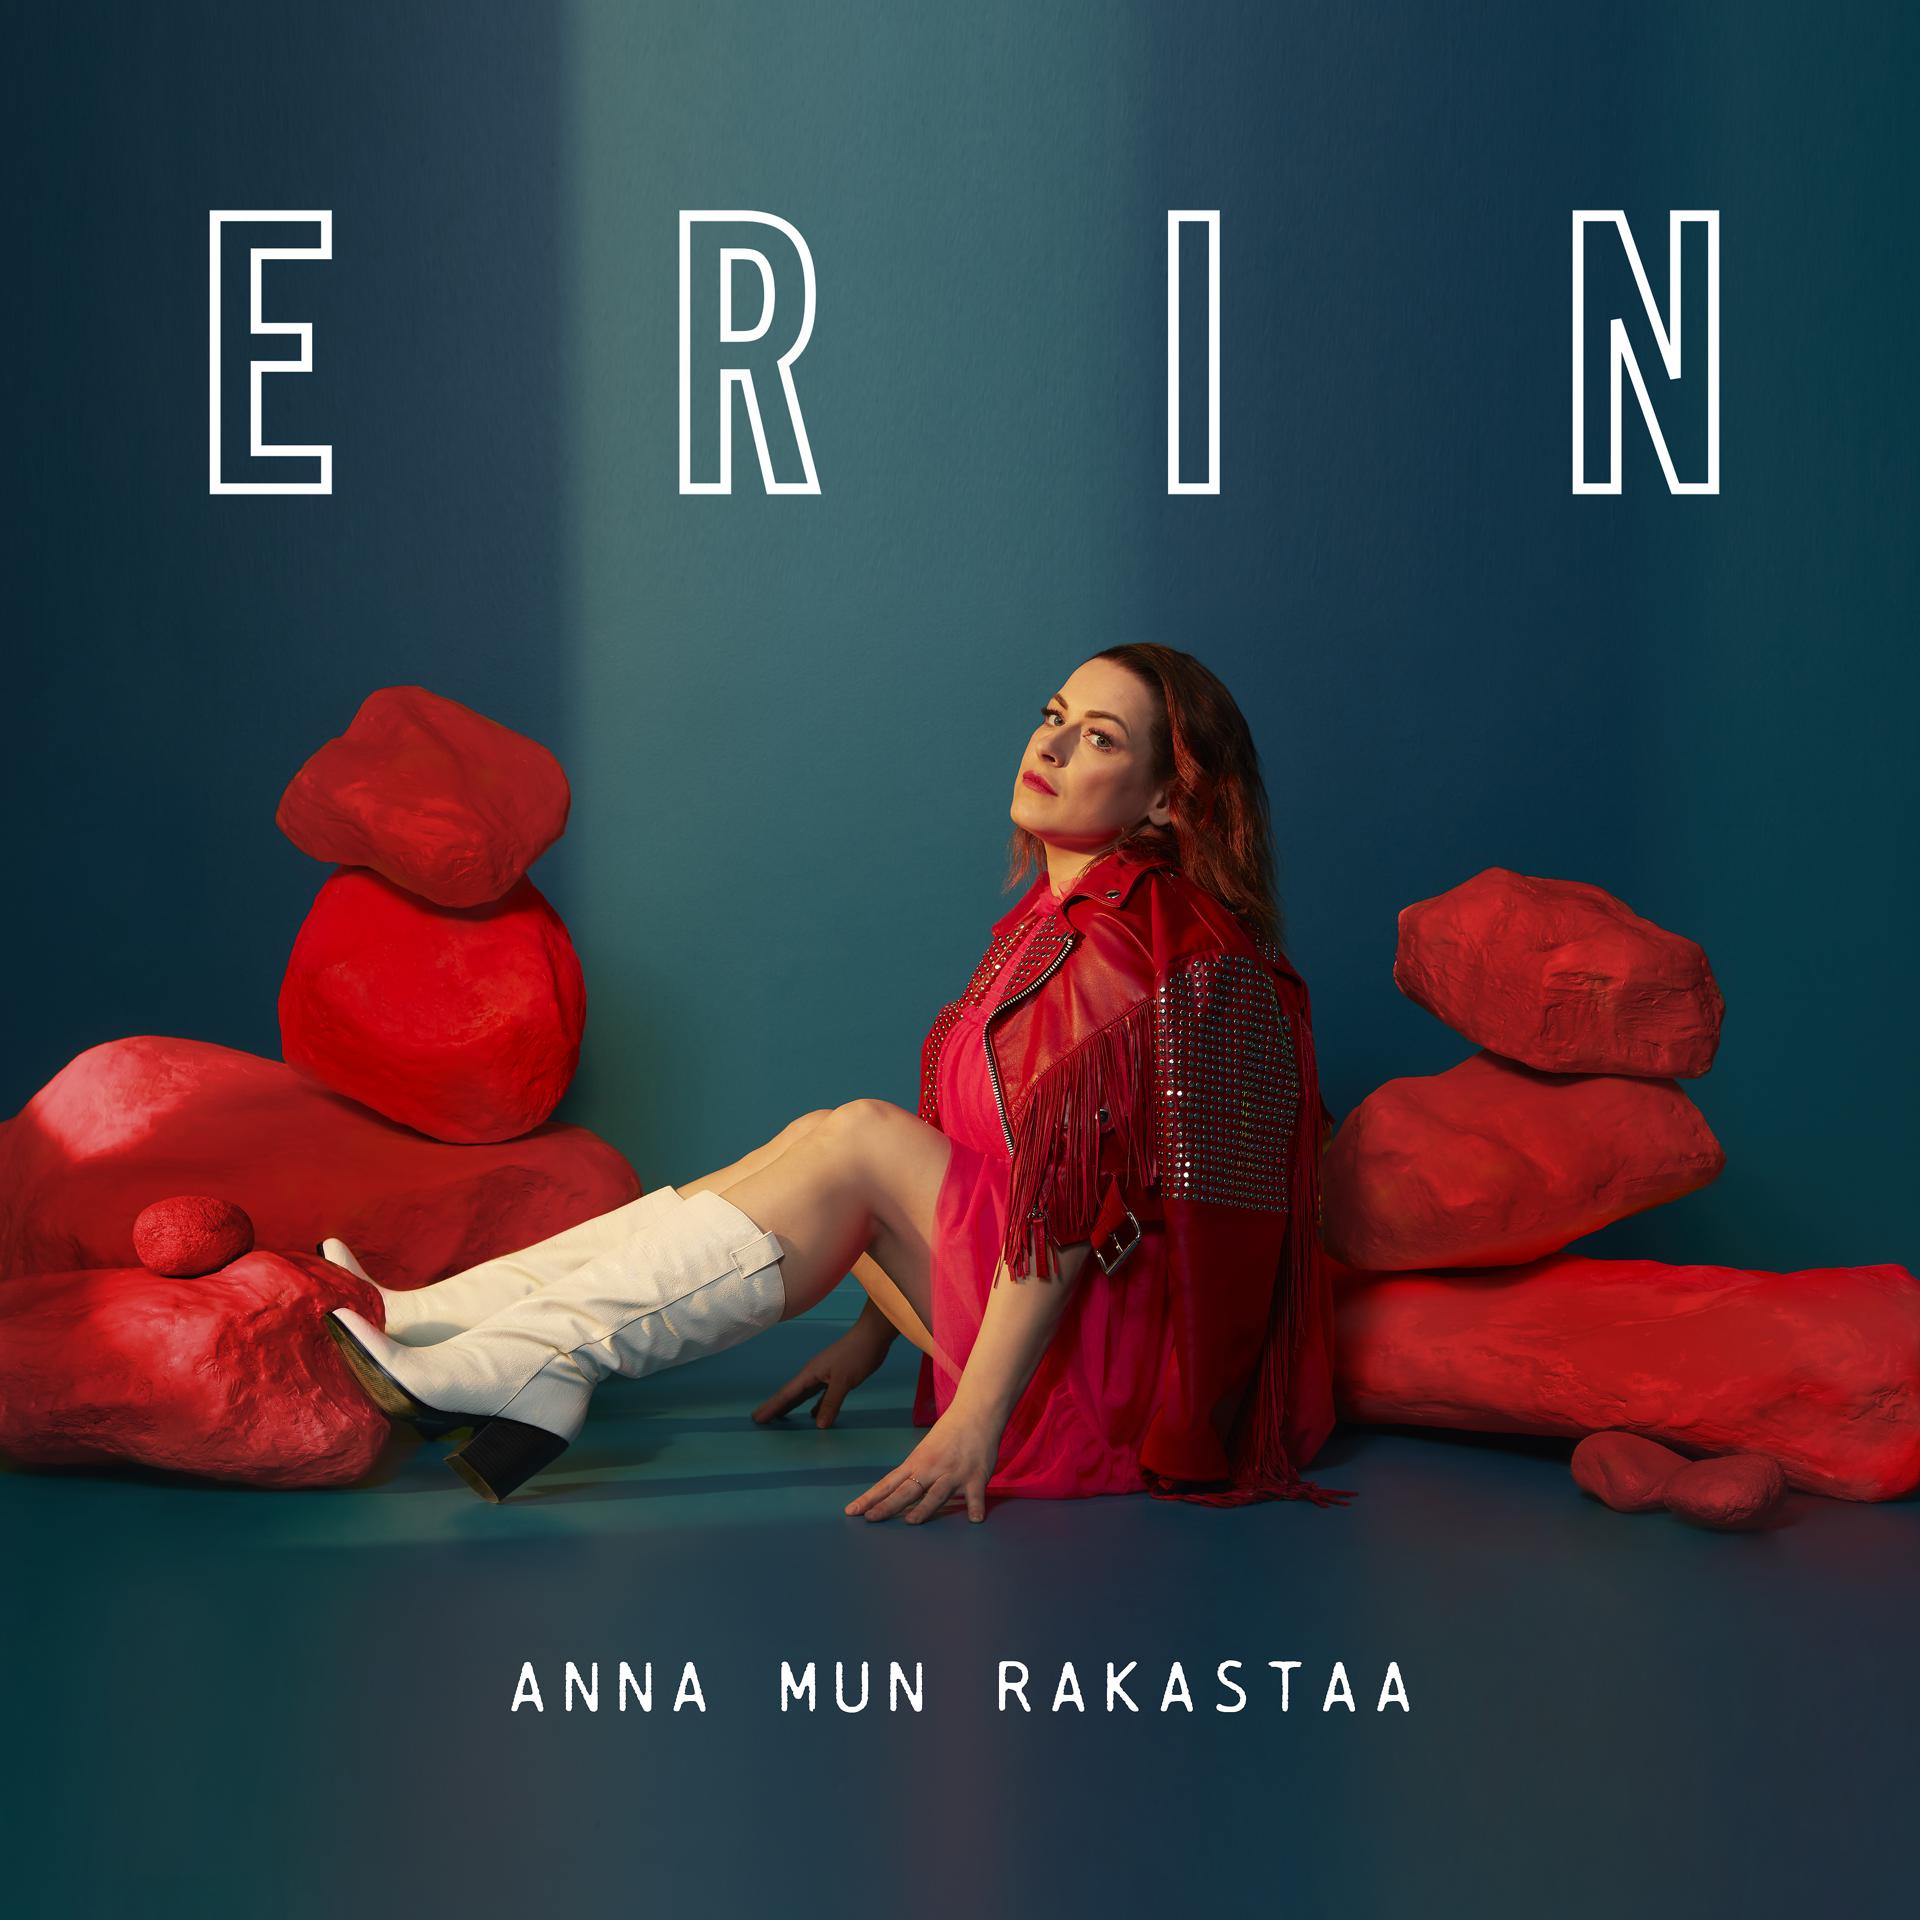 Постер к треку Erin - Anna mun rakastaa